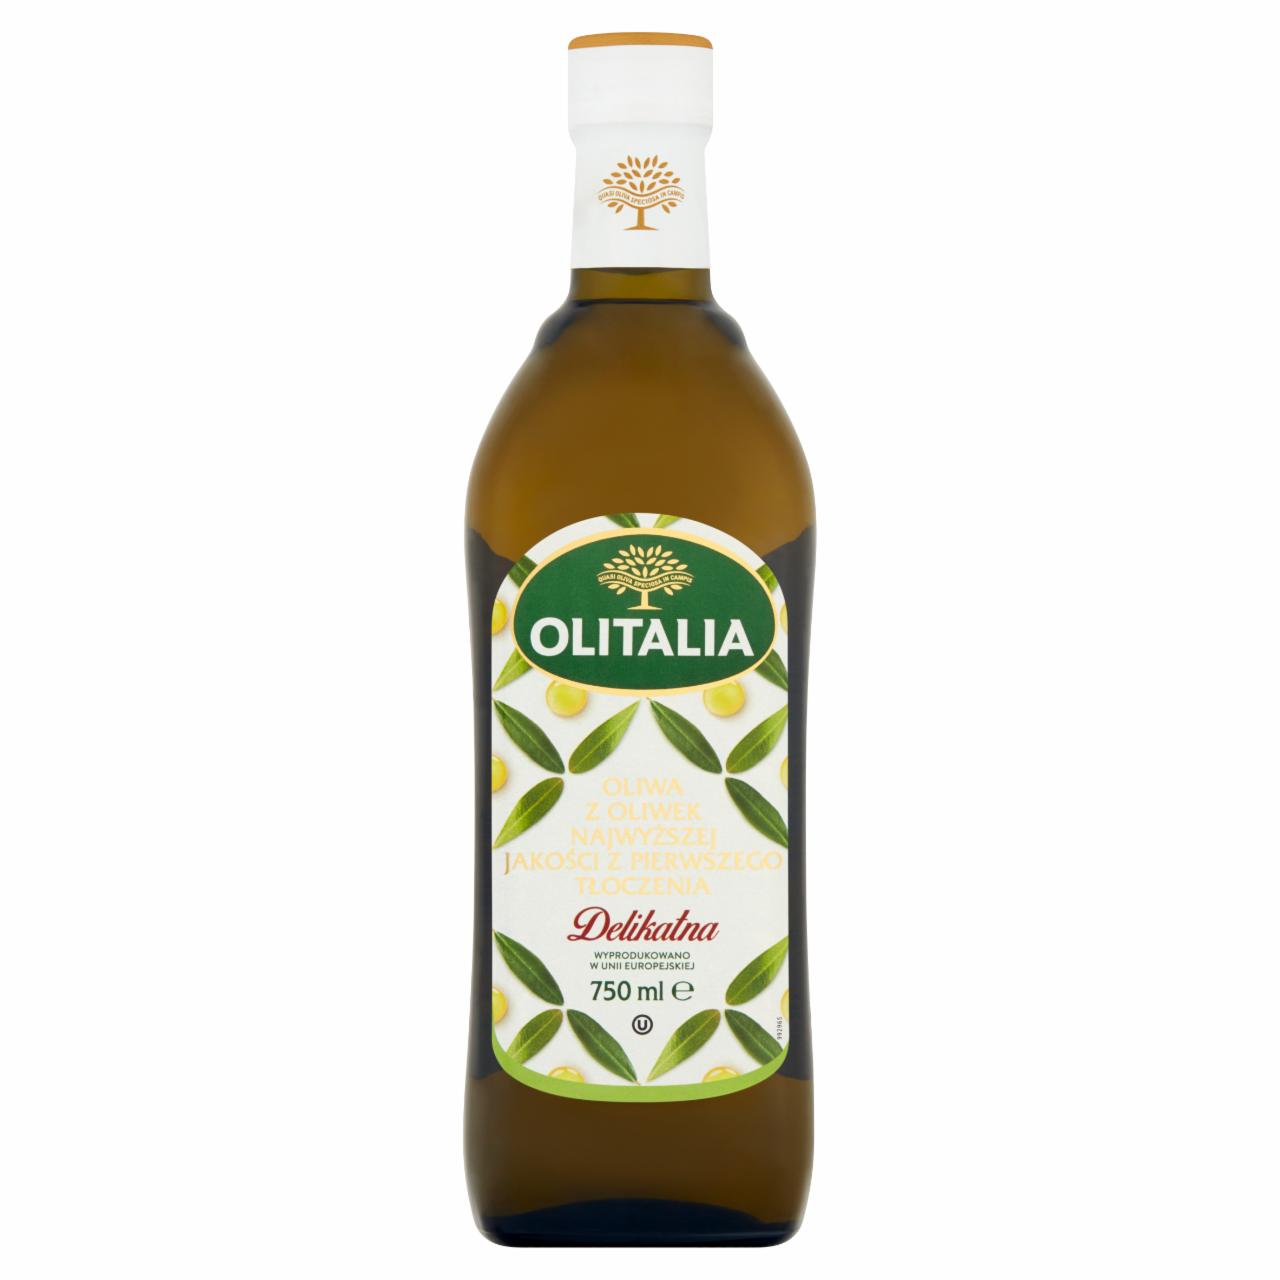 Zdjęcia - Olitalia Oliwa z oliwek najwyższej jakości z pierwszego tłoczenia 750 ml